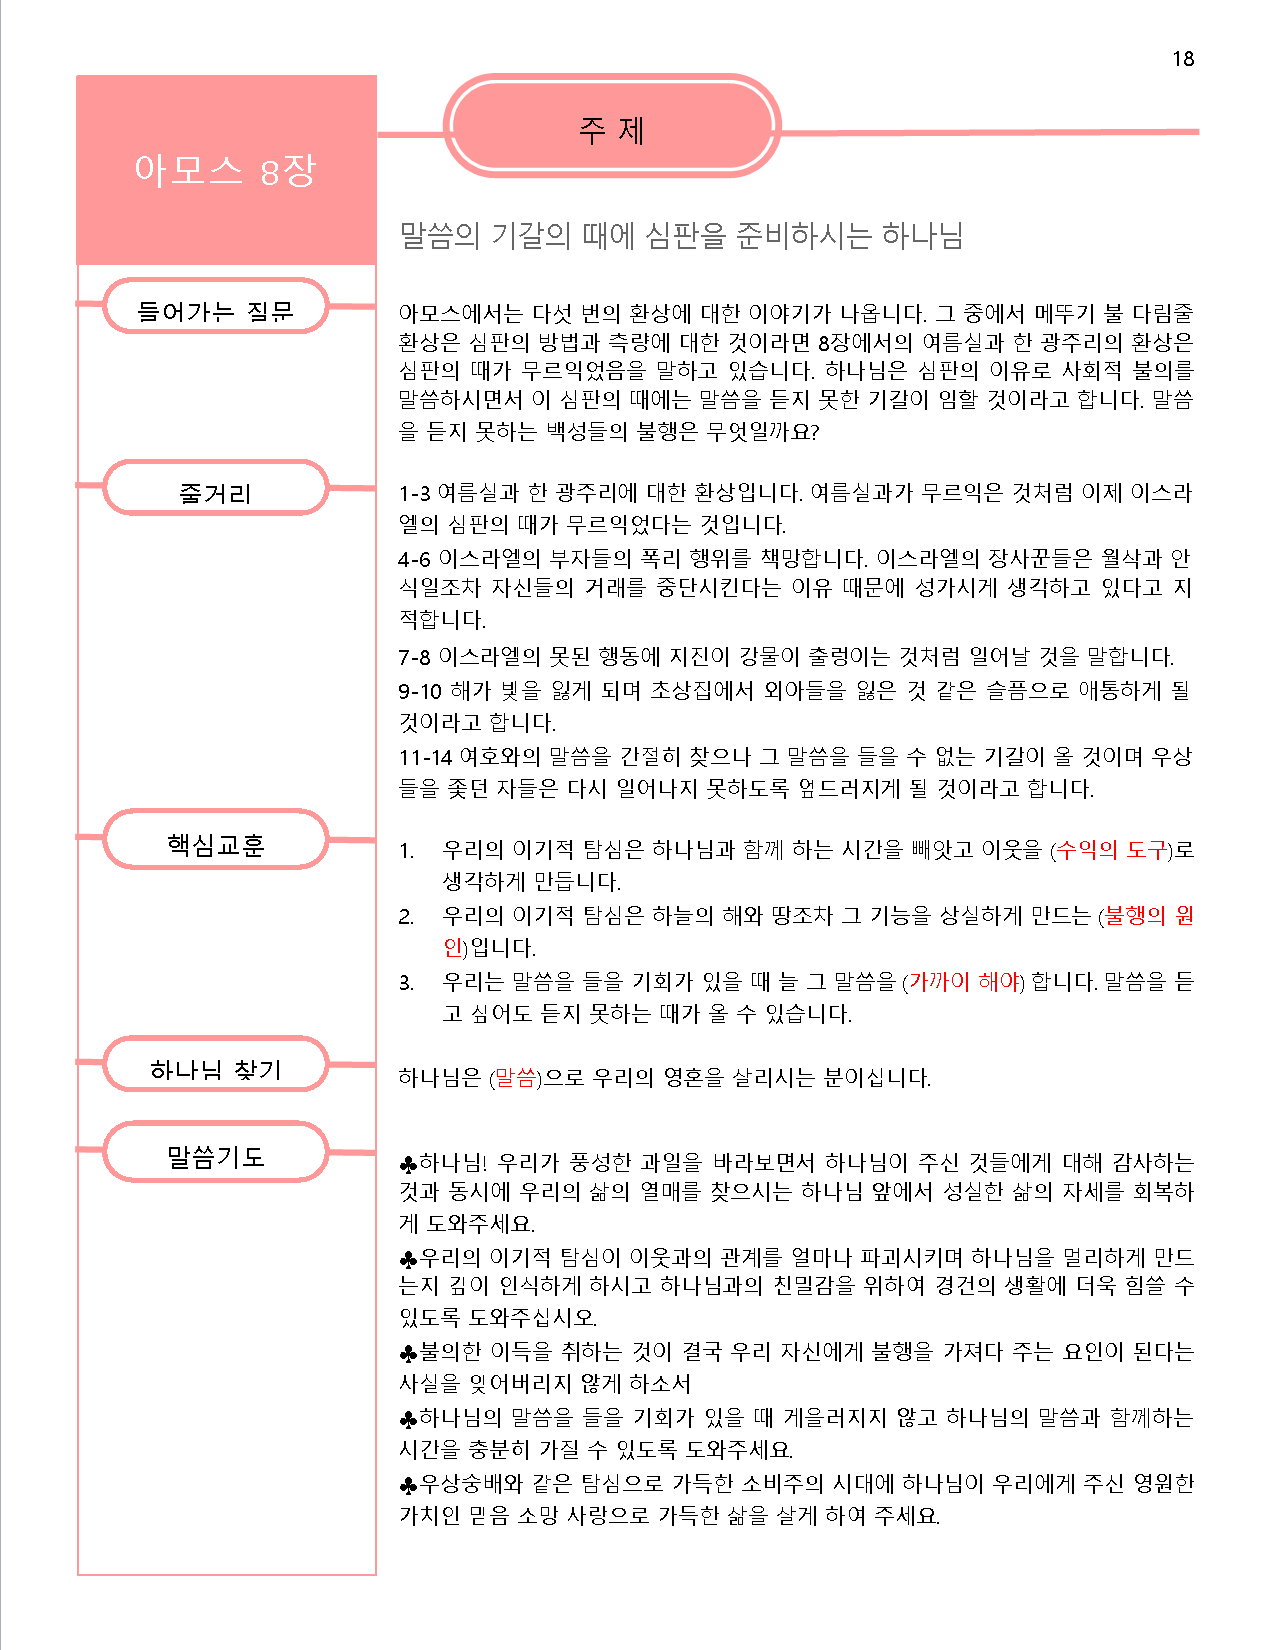 아모스서 강의안8-1.png